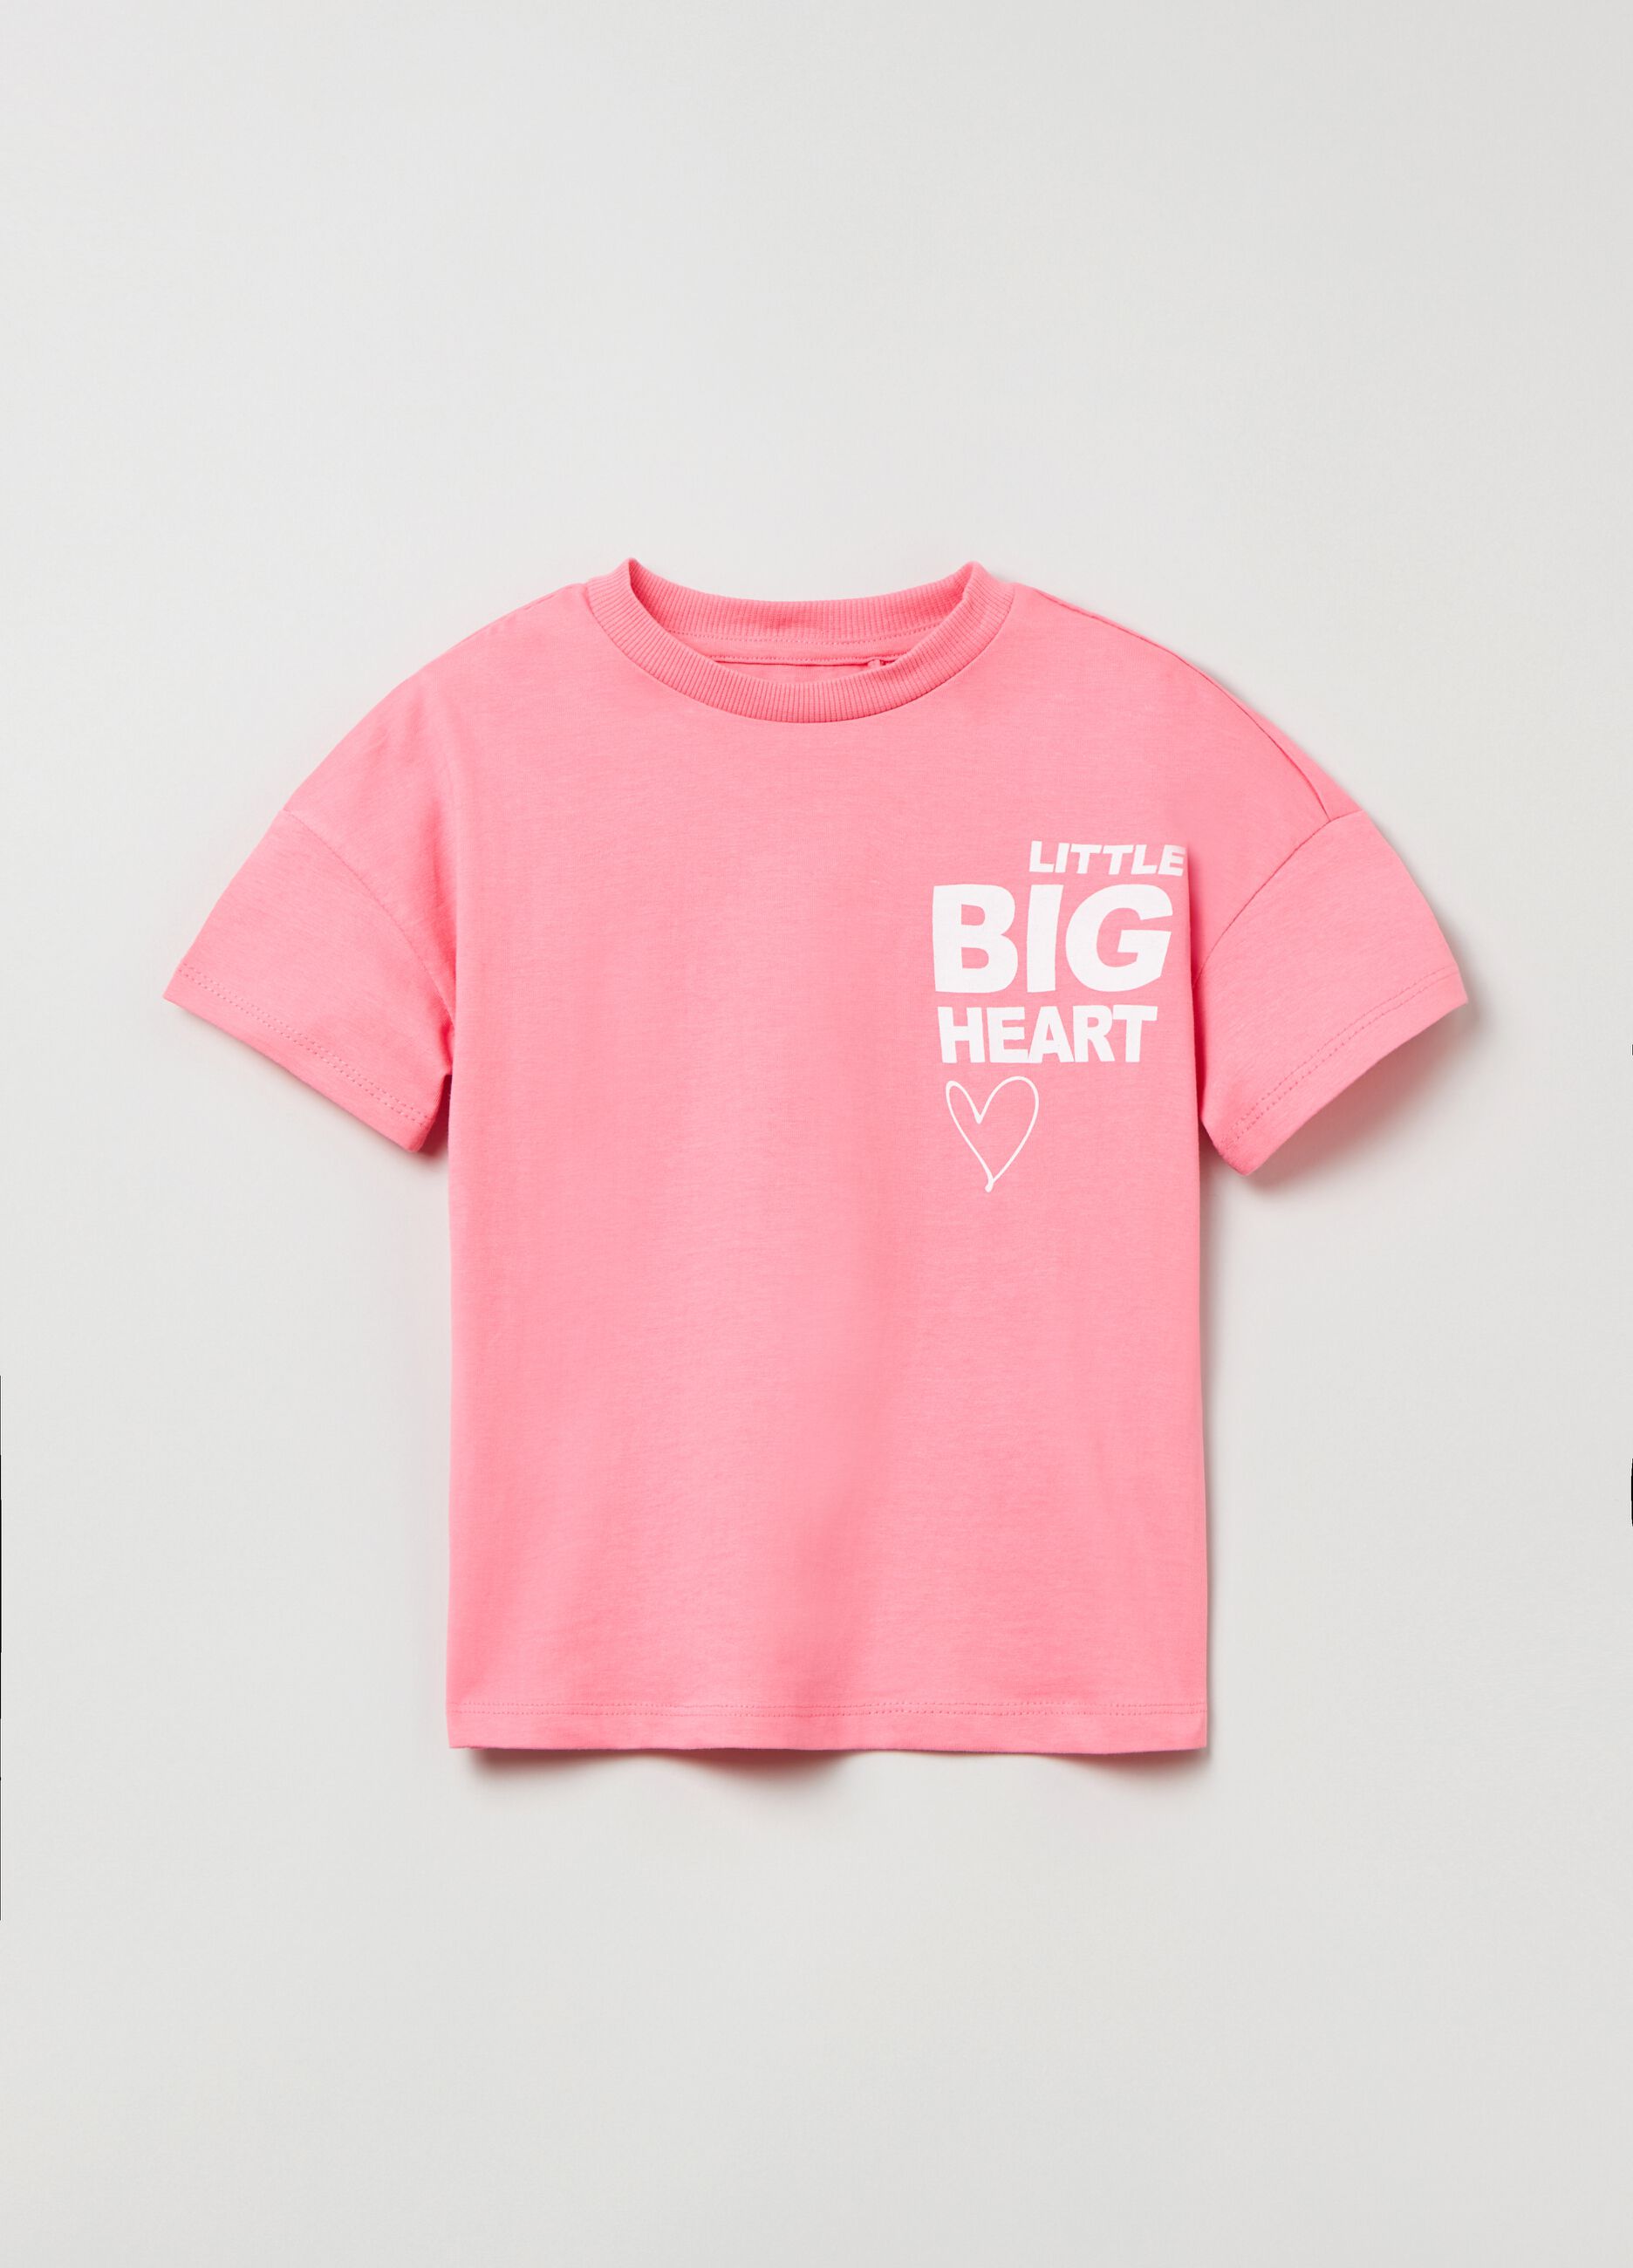 Camiseta de algodón estampado corazón y motivo de texto